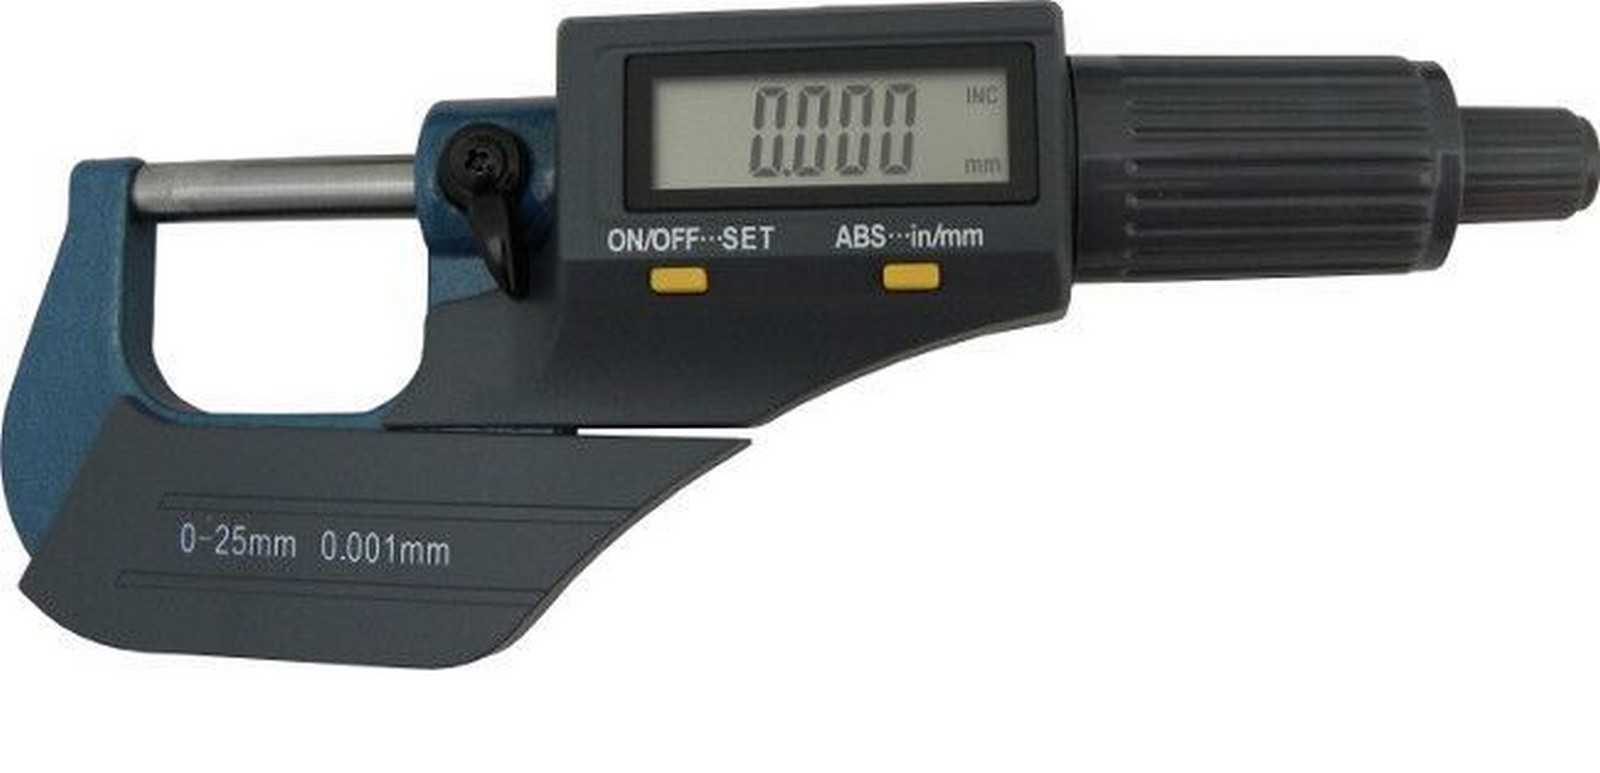 Mikrometr digitální, 0-25mm GEKO nářadí G01487 + Dárek, servis bez starostí v hodnotě 300Kč